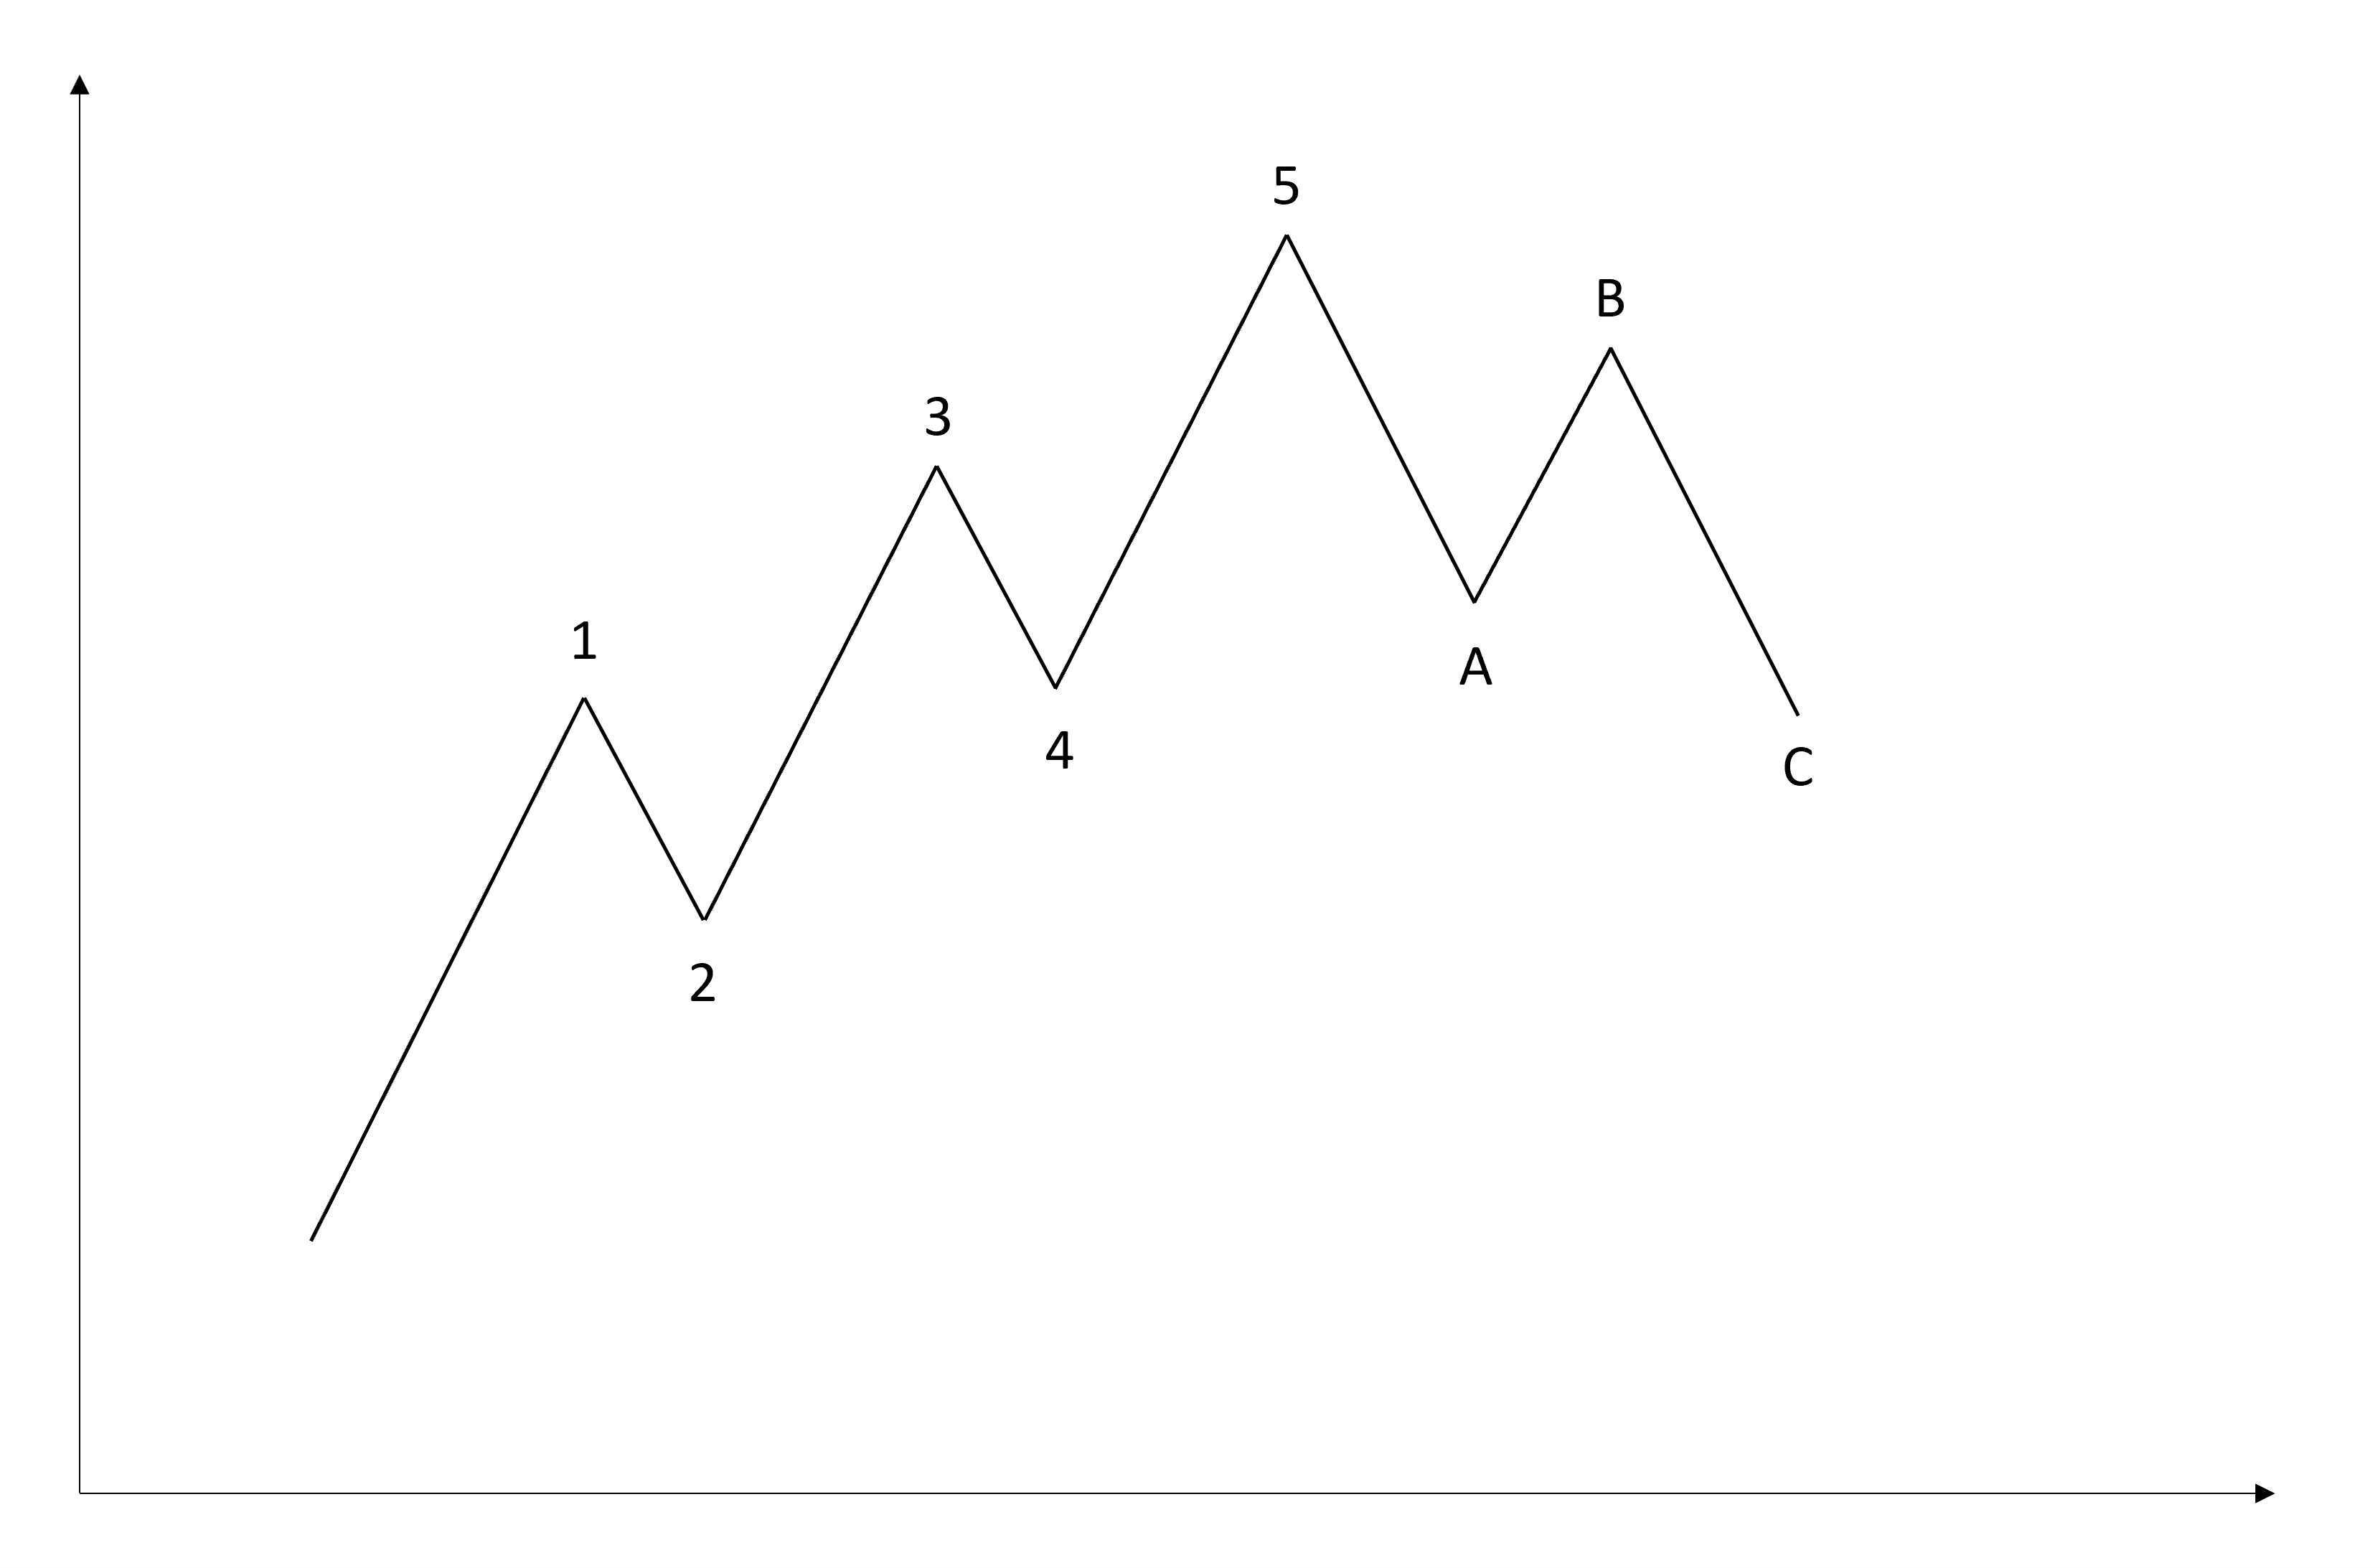 Aufbau der Elliott Wellen inklusive Bezeichnungen 1 bis 5 und A bis C